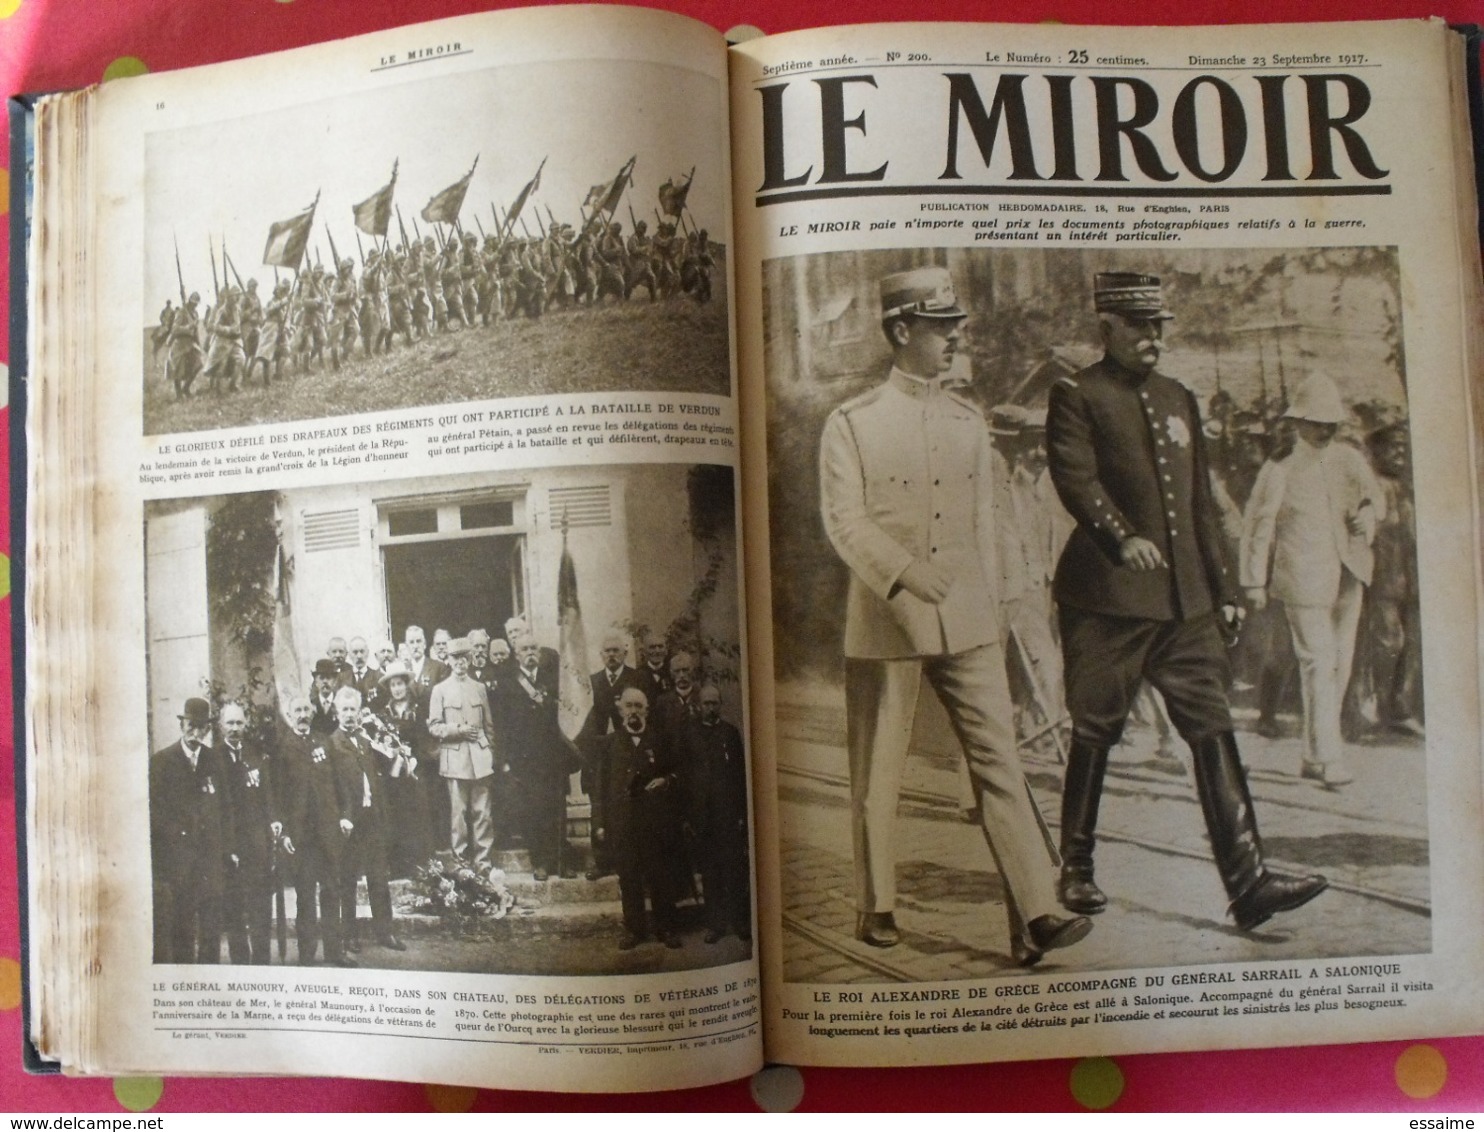 Le miroir. 2ème semestre 1917. 22 numéros. la guerre 14-18 très illustrée. recueil, reliure. révolution russe